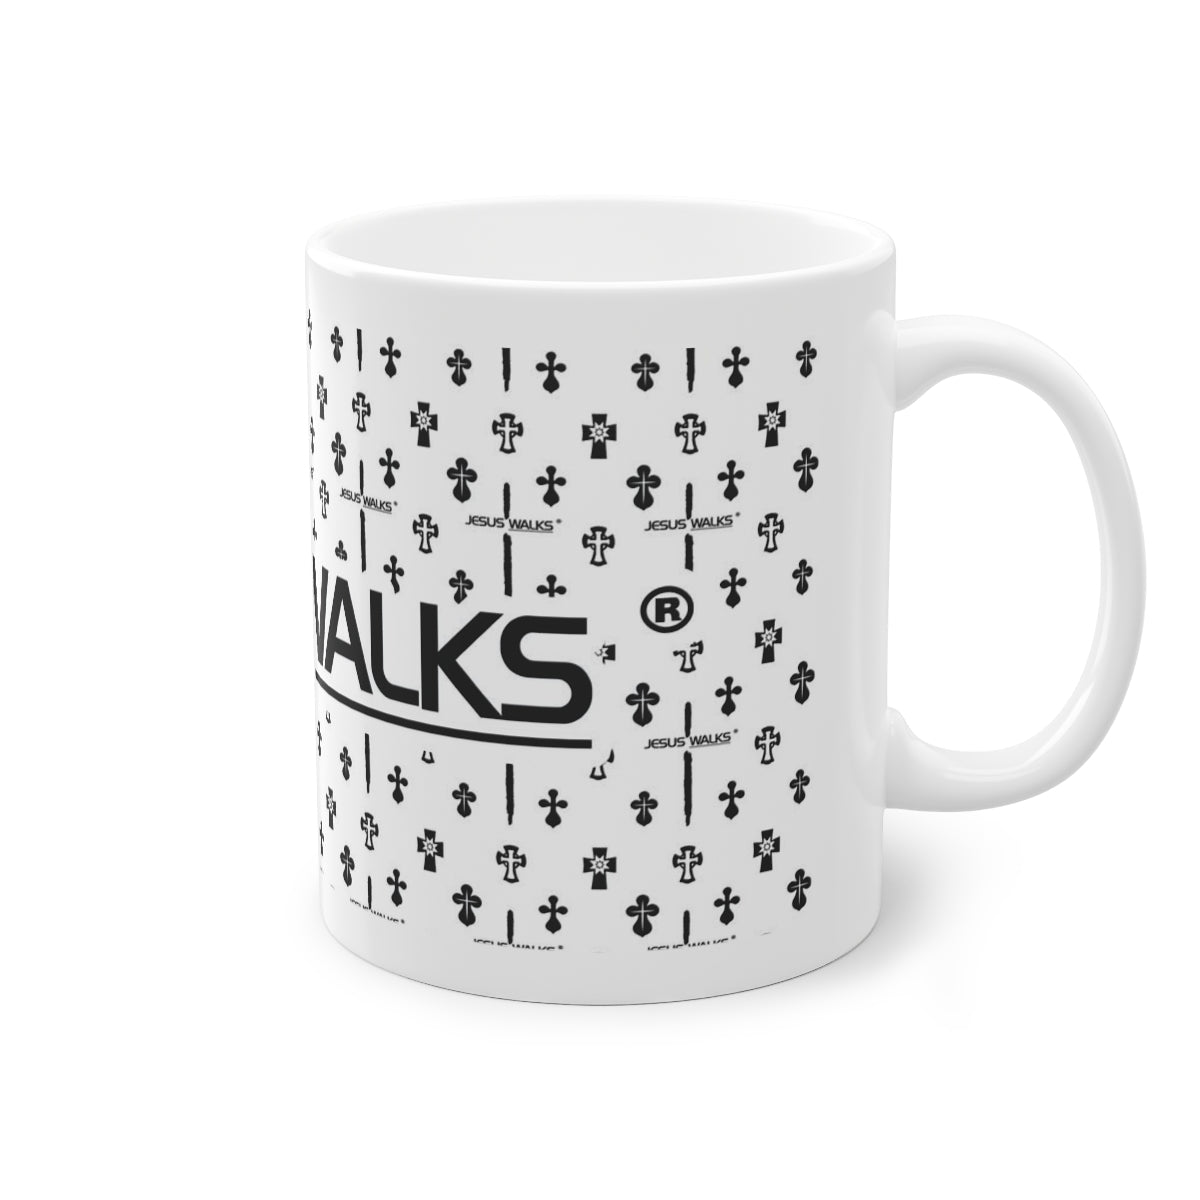 jesus-walks-designer-mug. jpg